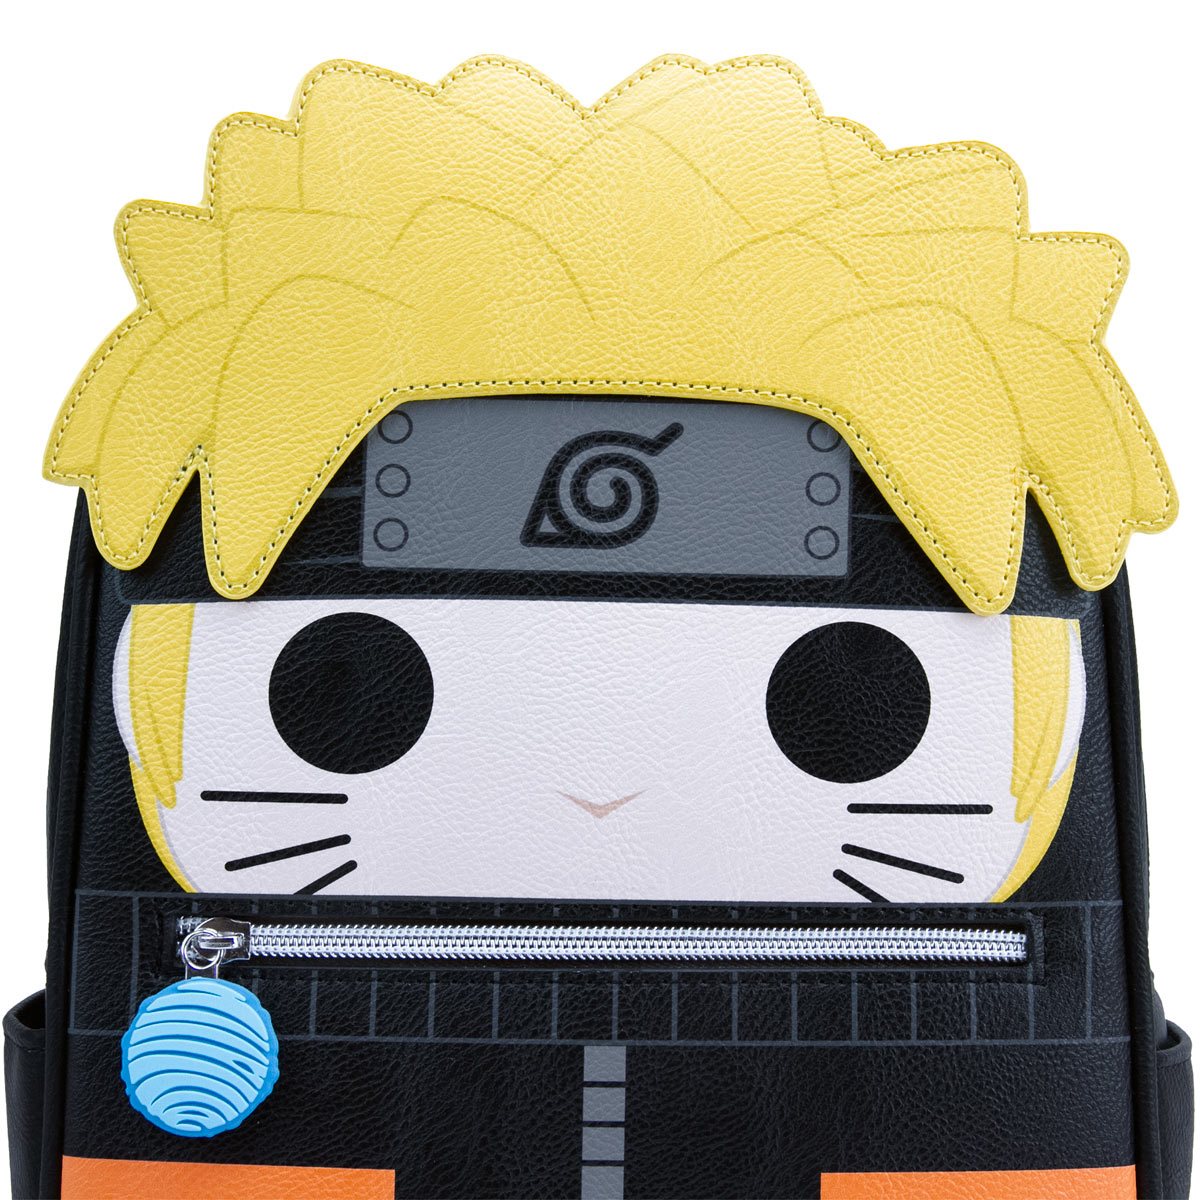 Naruto Anime Uzumaki Backpck Lunch Bag School Bag for Teens 18